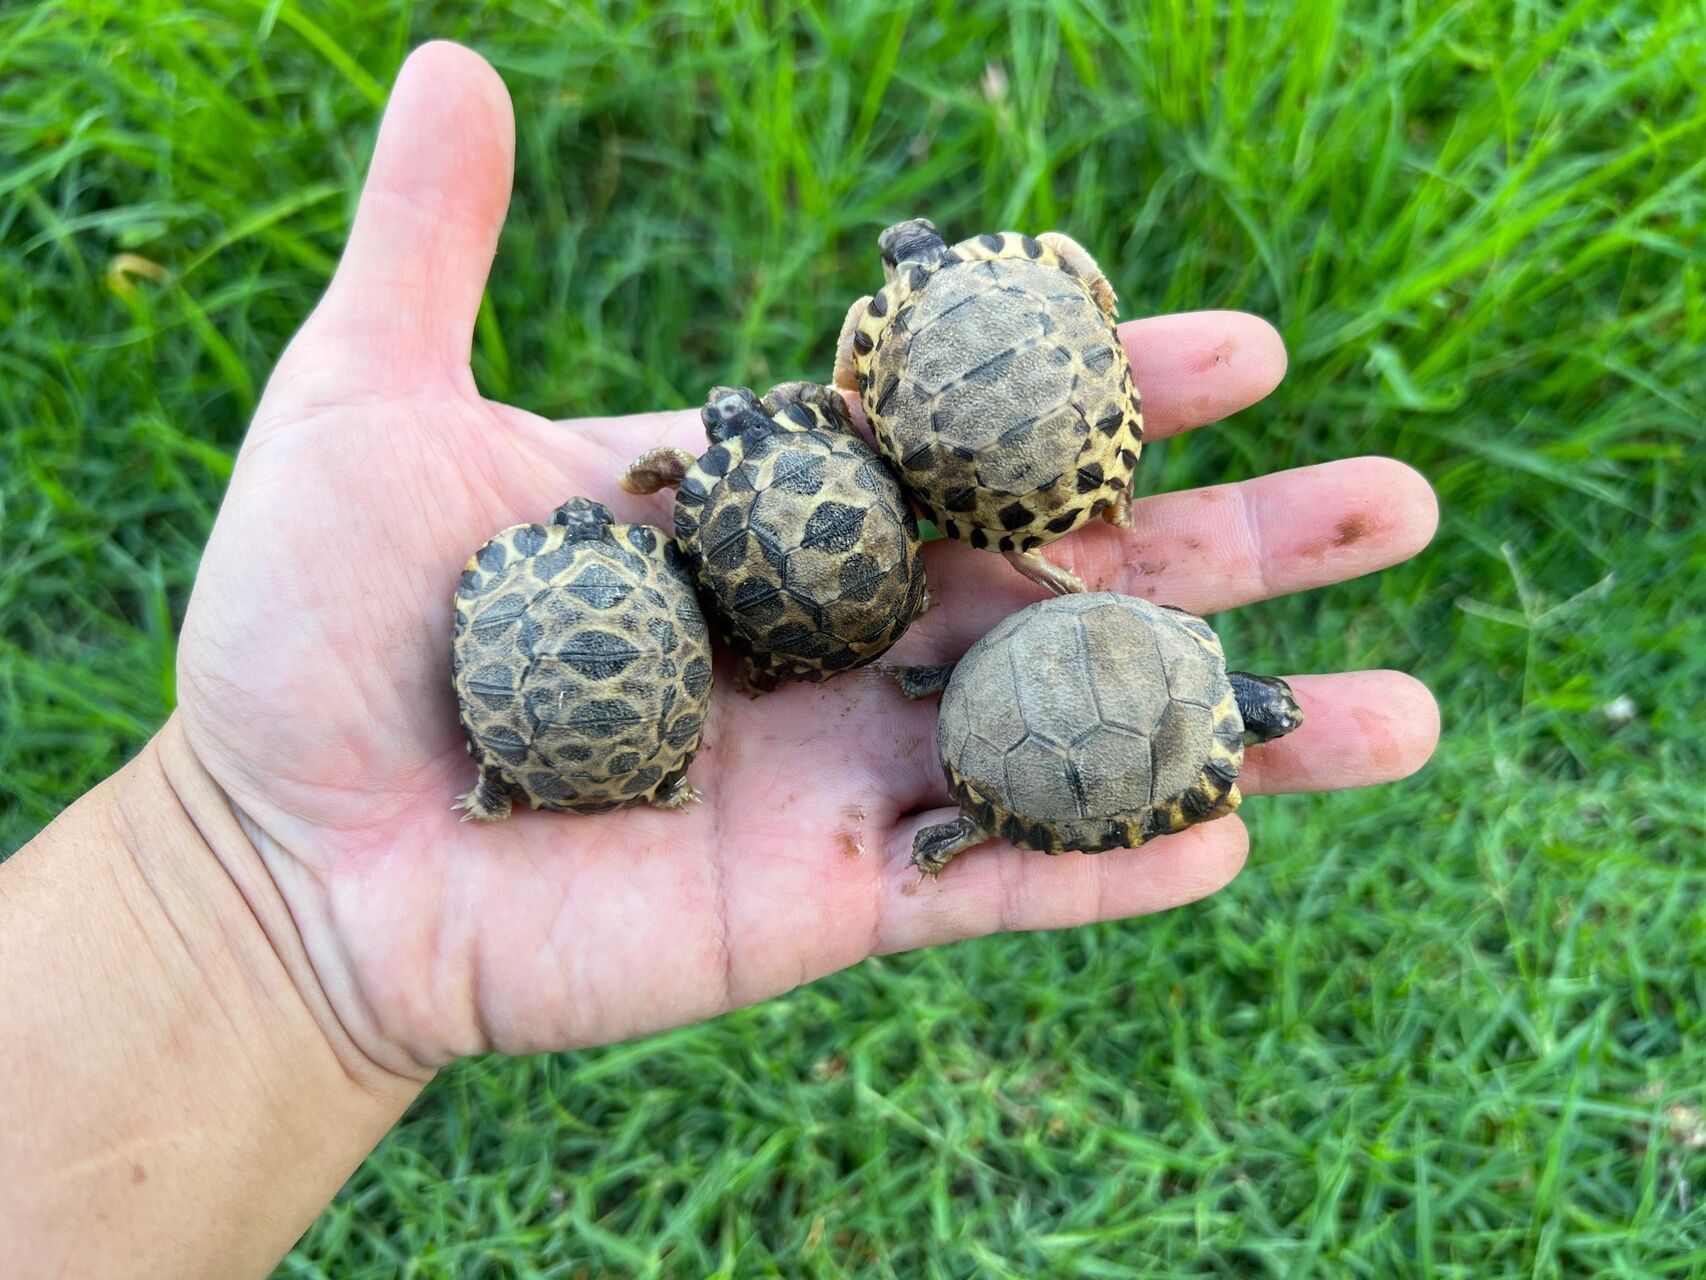 自然孵化的小辐射陆龟 没有什么比在院子里发现自然孵化的小辐射陆龟